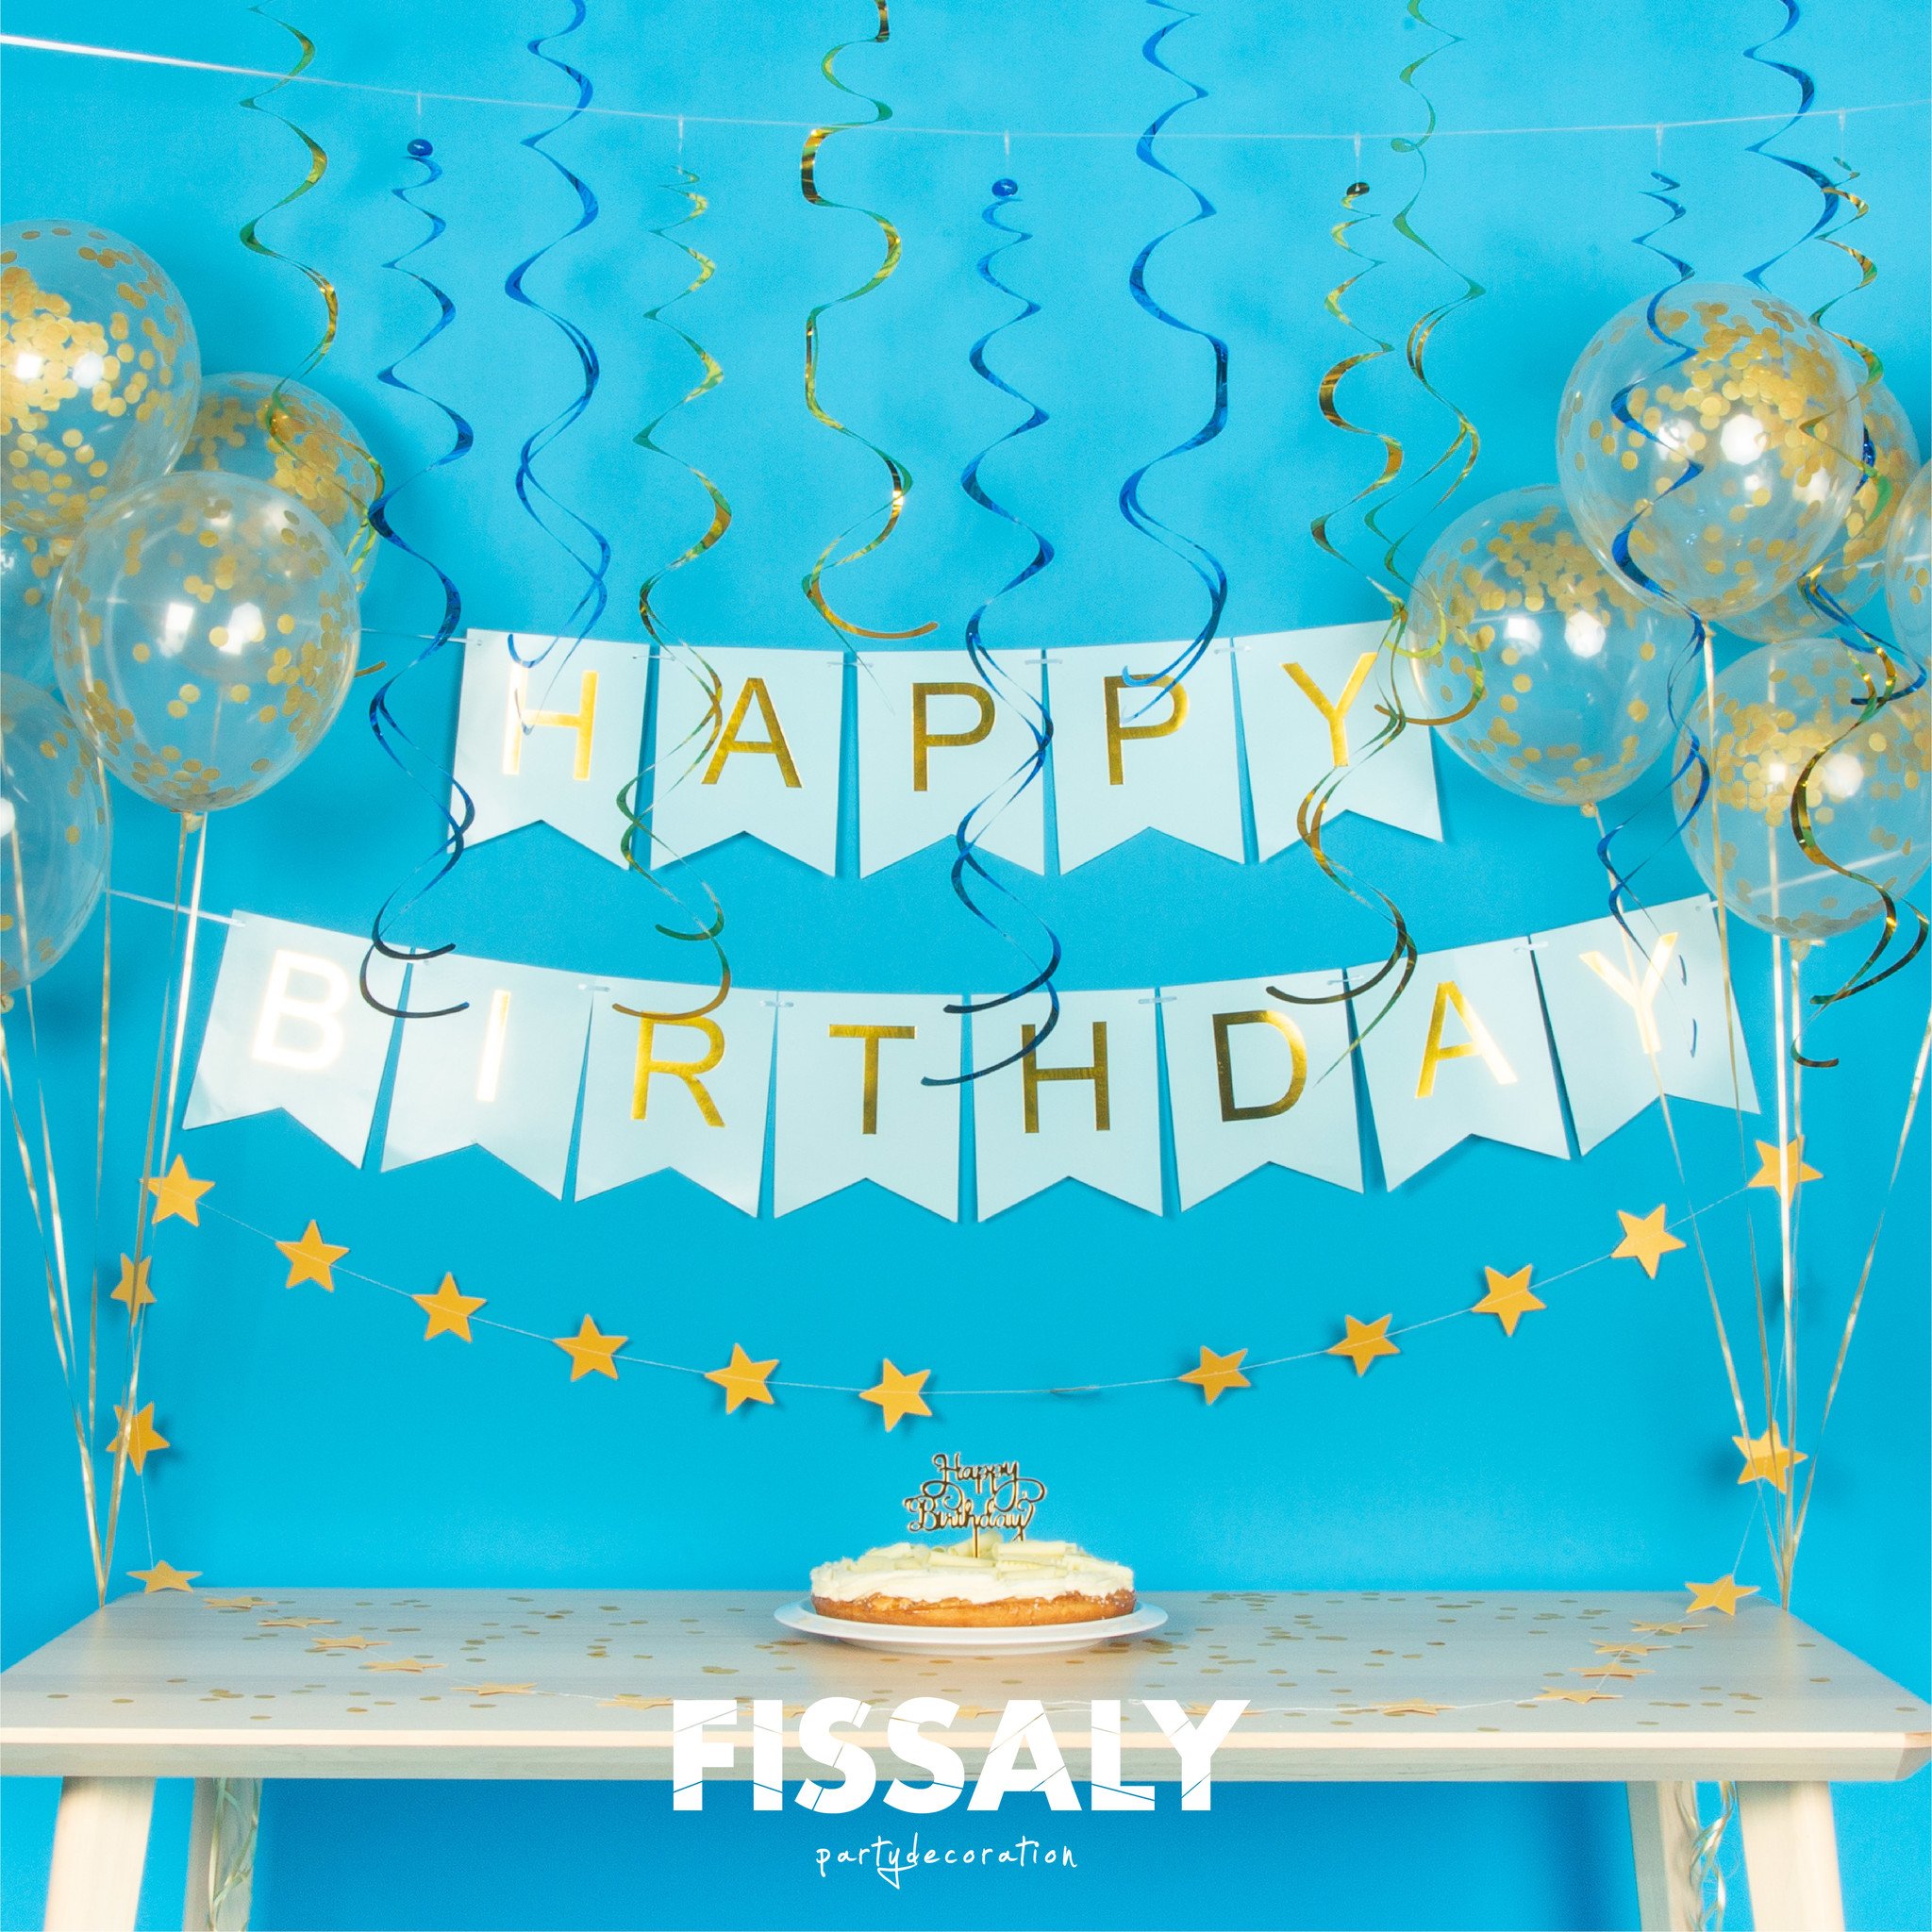 gehandicapt gebied les Fissaly® Verjaardag Slinger Blauw & Goud met Confetti Ballonnen – Decoratie  – Happy Birthday - Fissaly